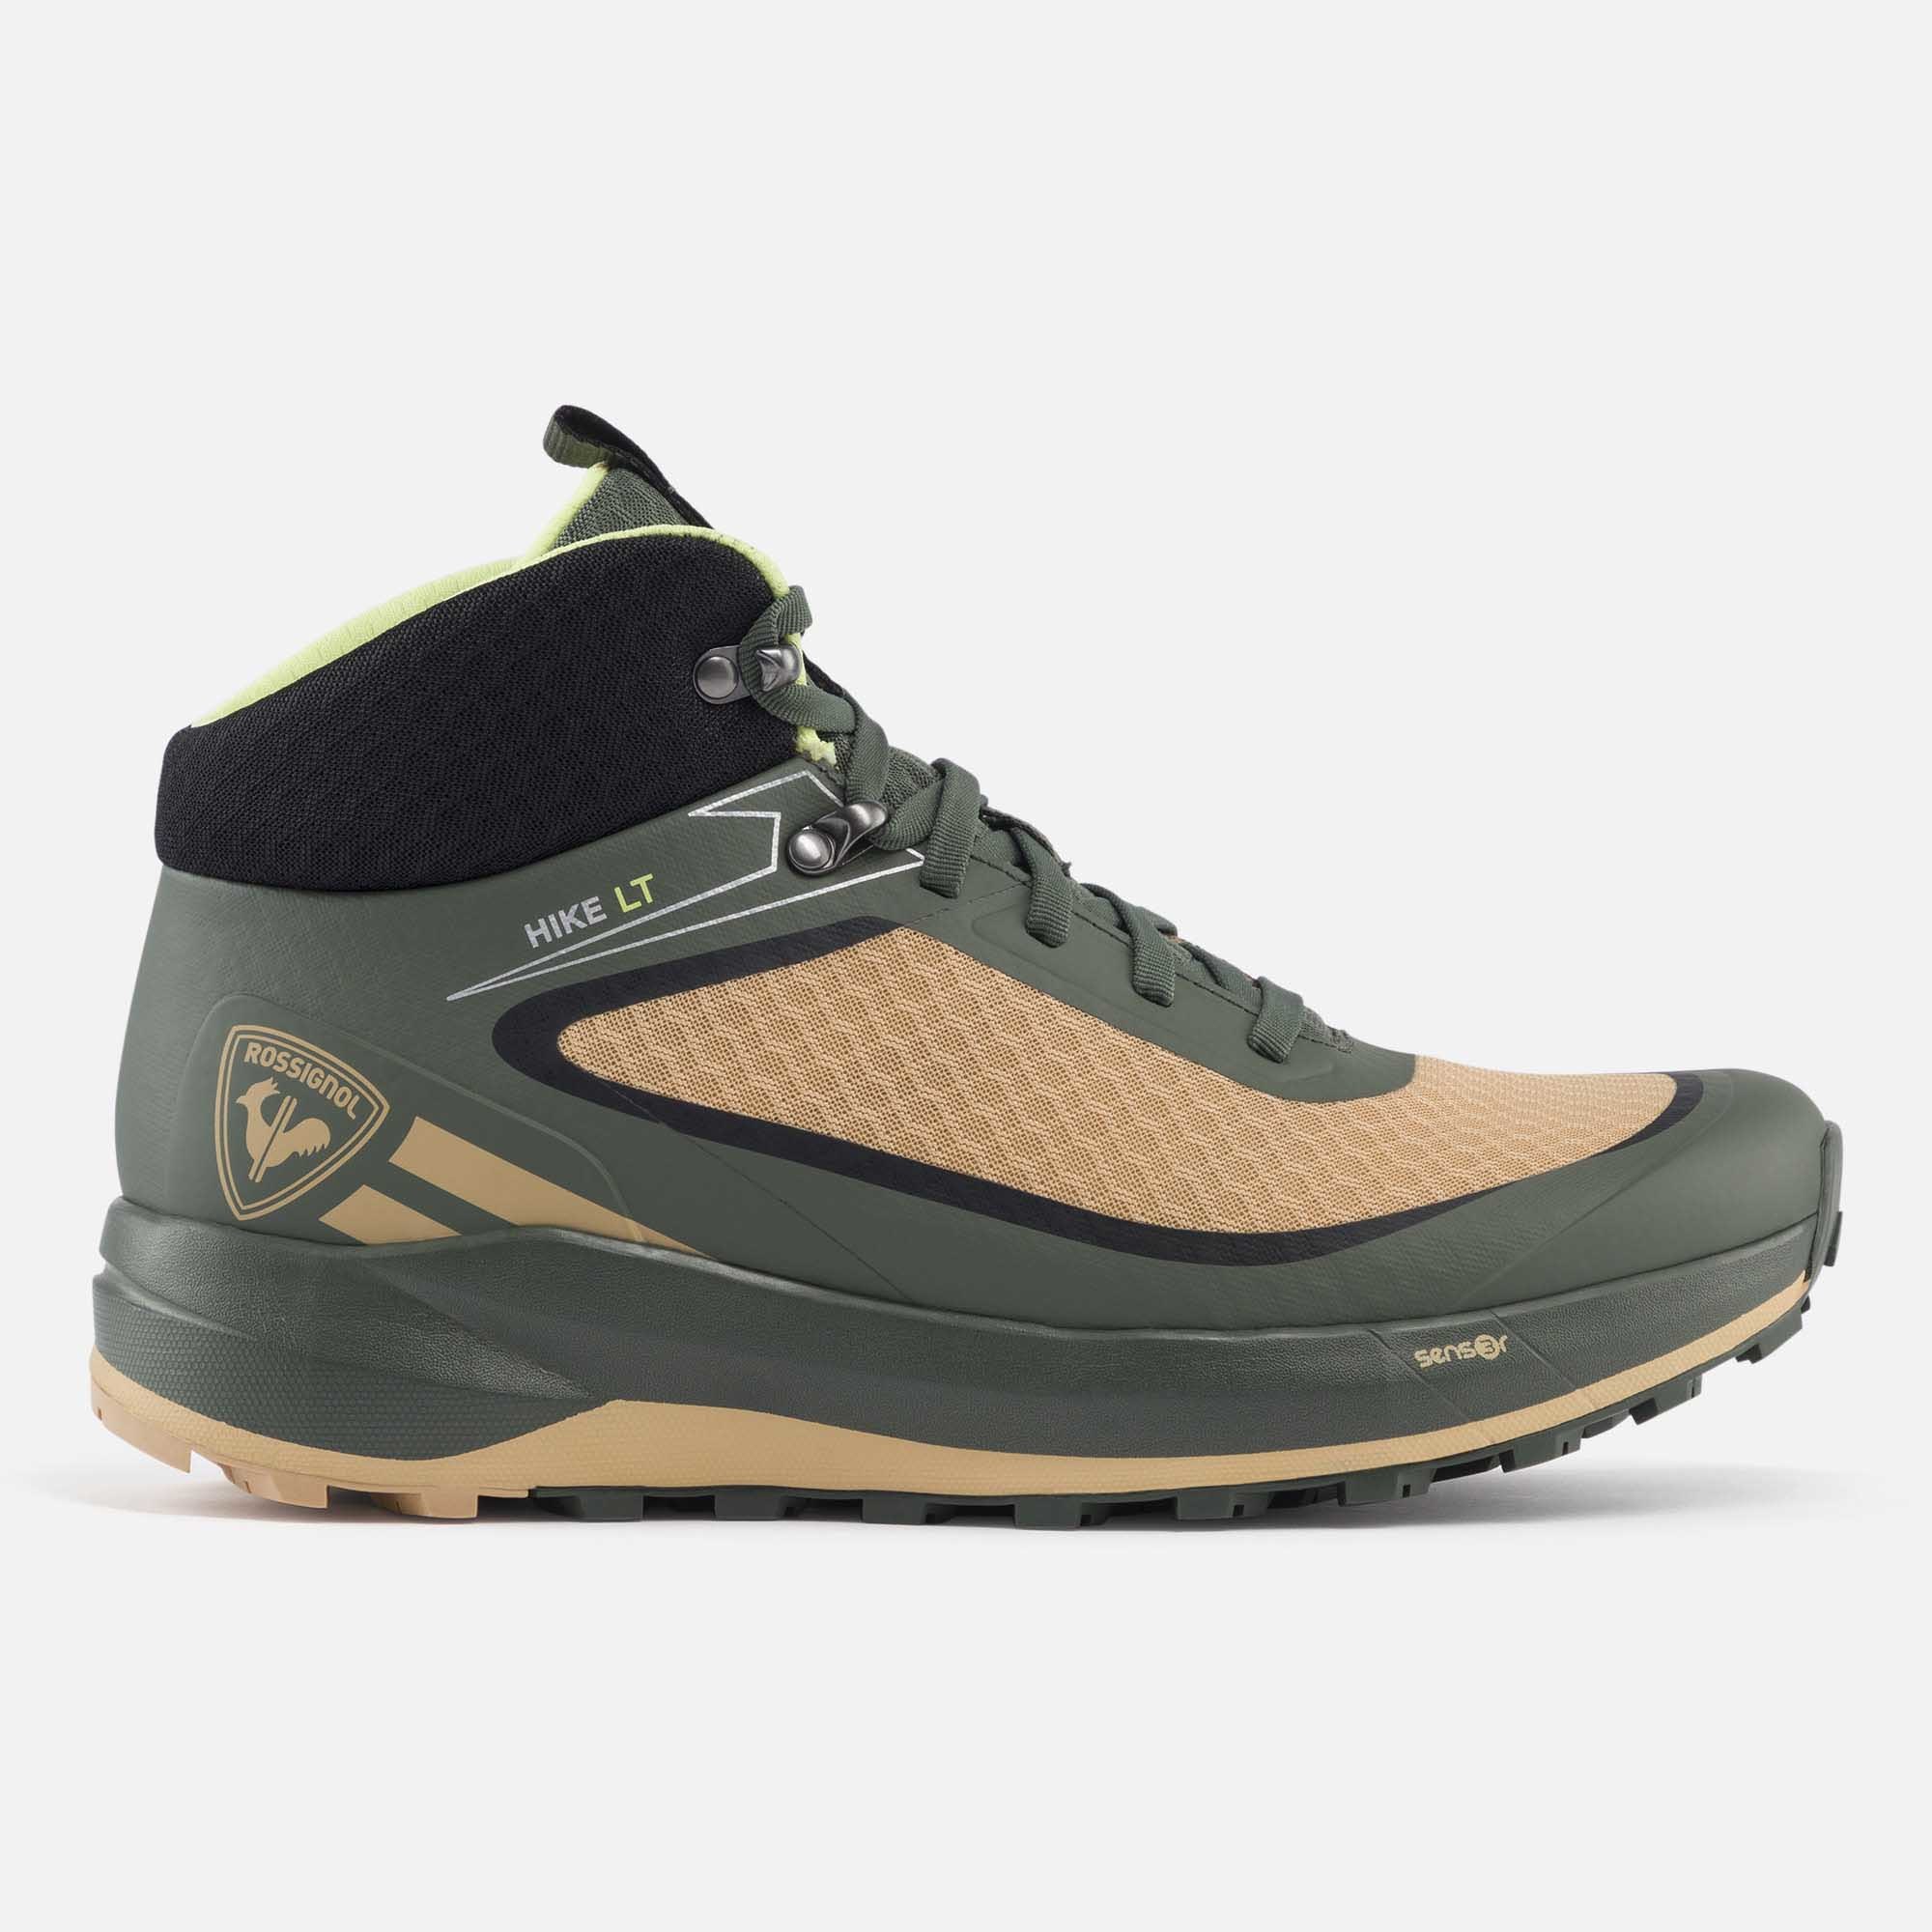 Men's green lightweight hiking shoes